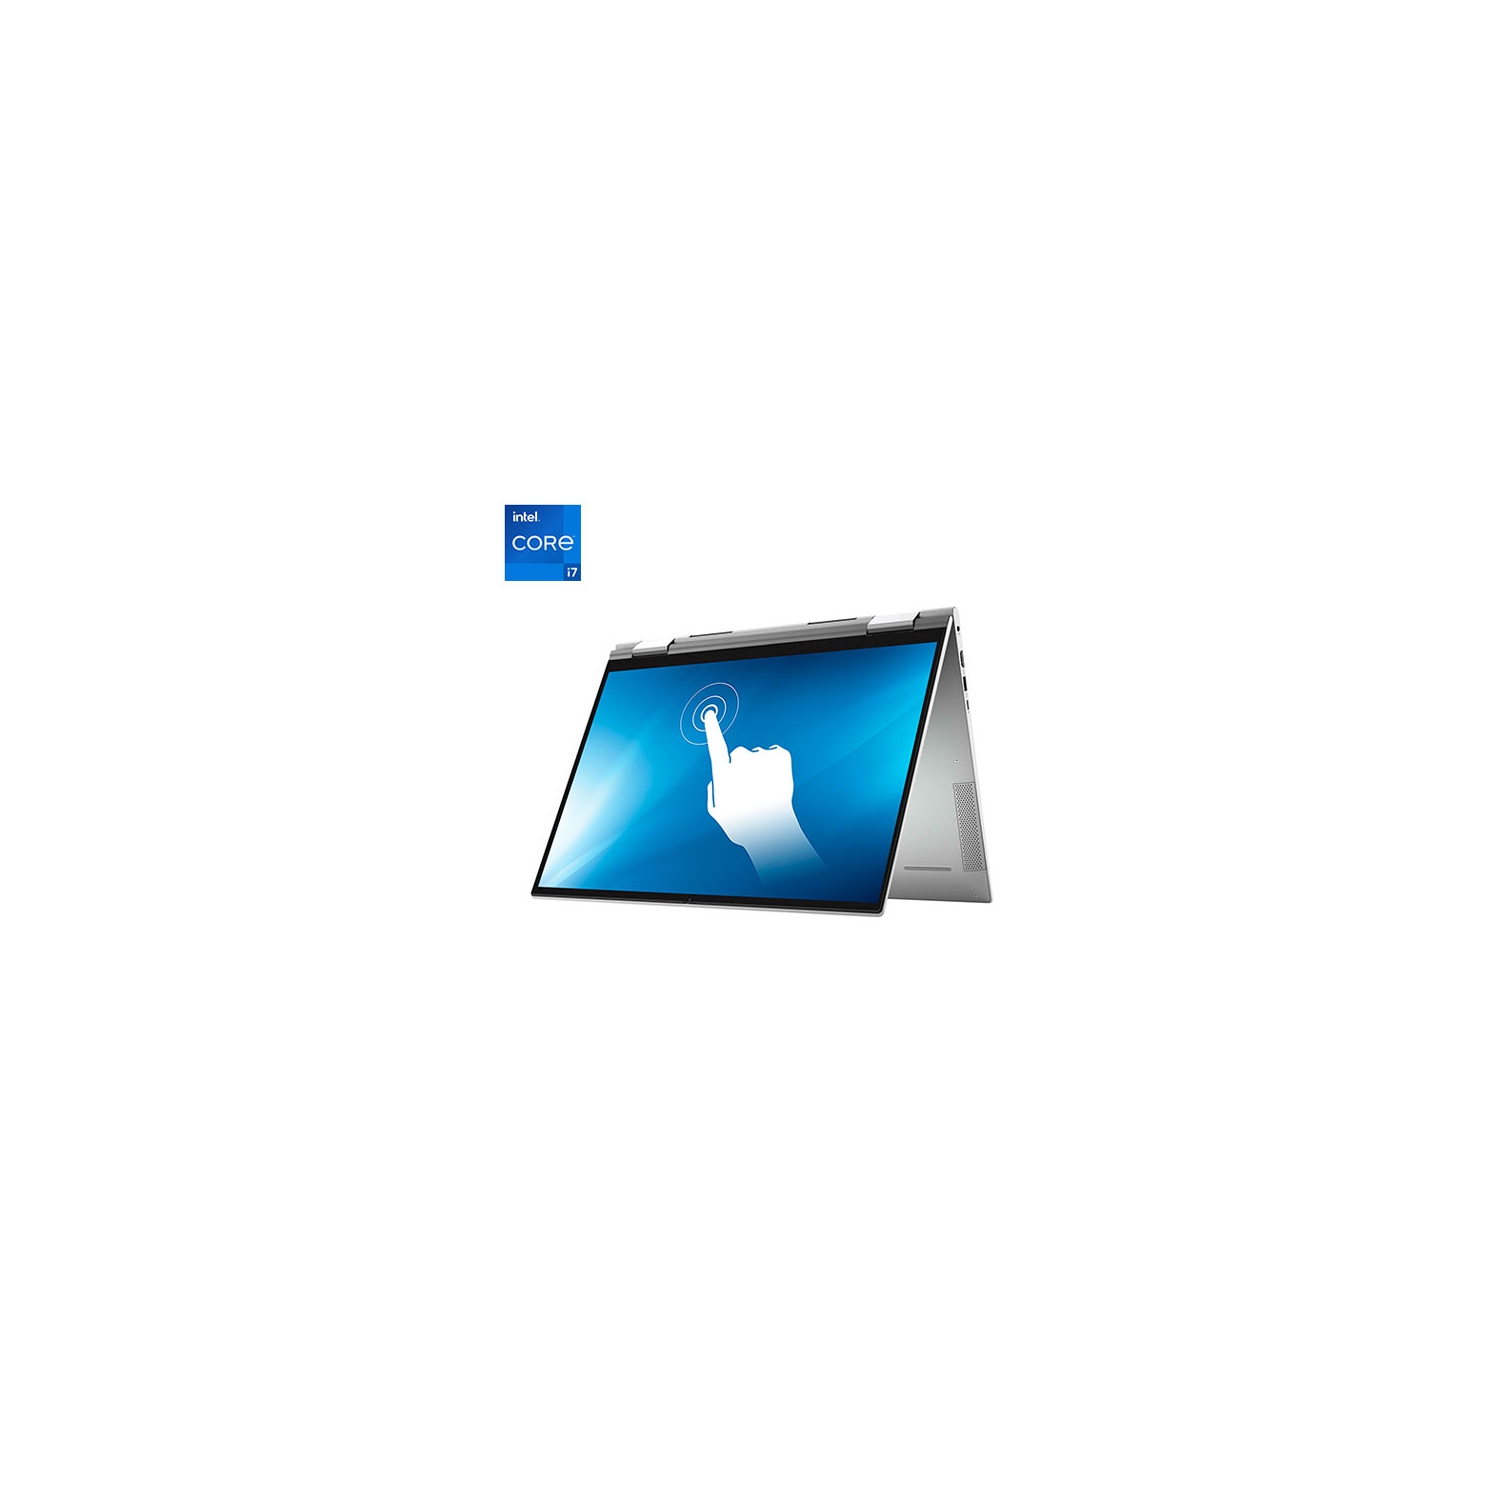 Dell Inspiron 7000 17" Touchscreen 2-in-1 Laptop - Silver (Intel i7-1165G7/512GB SSD/16GB RAM) - En - Open Box